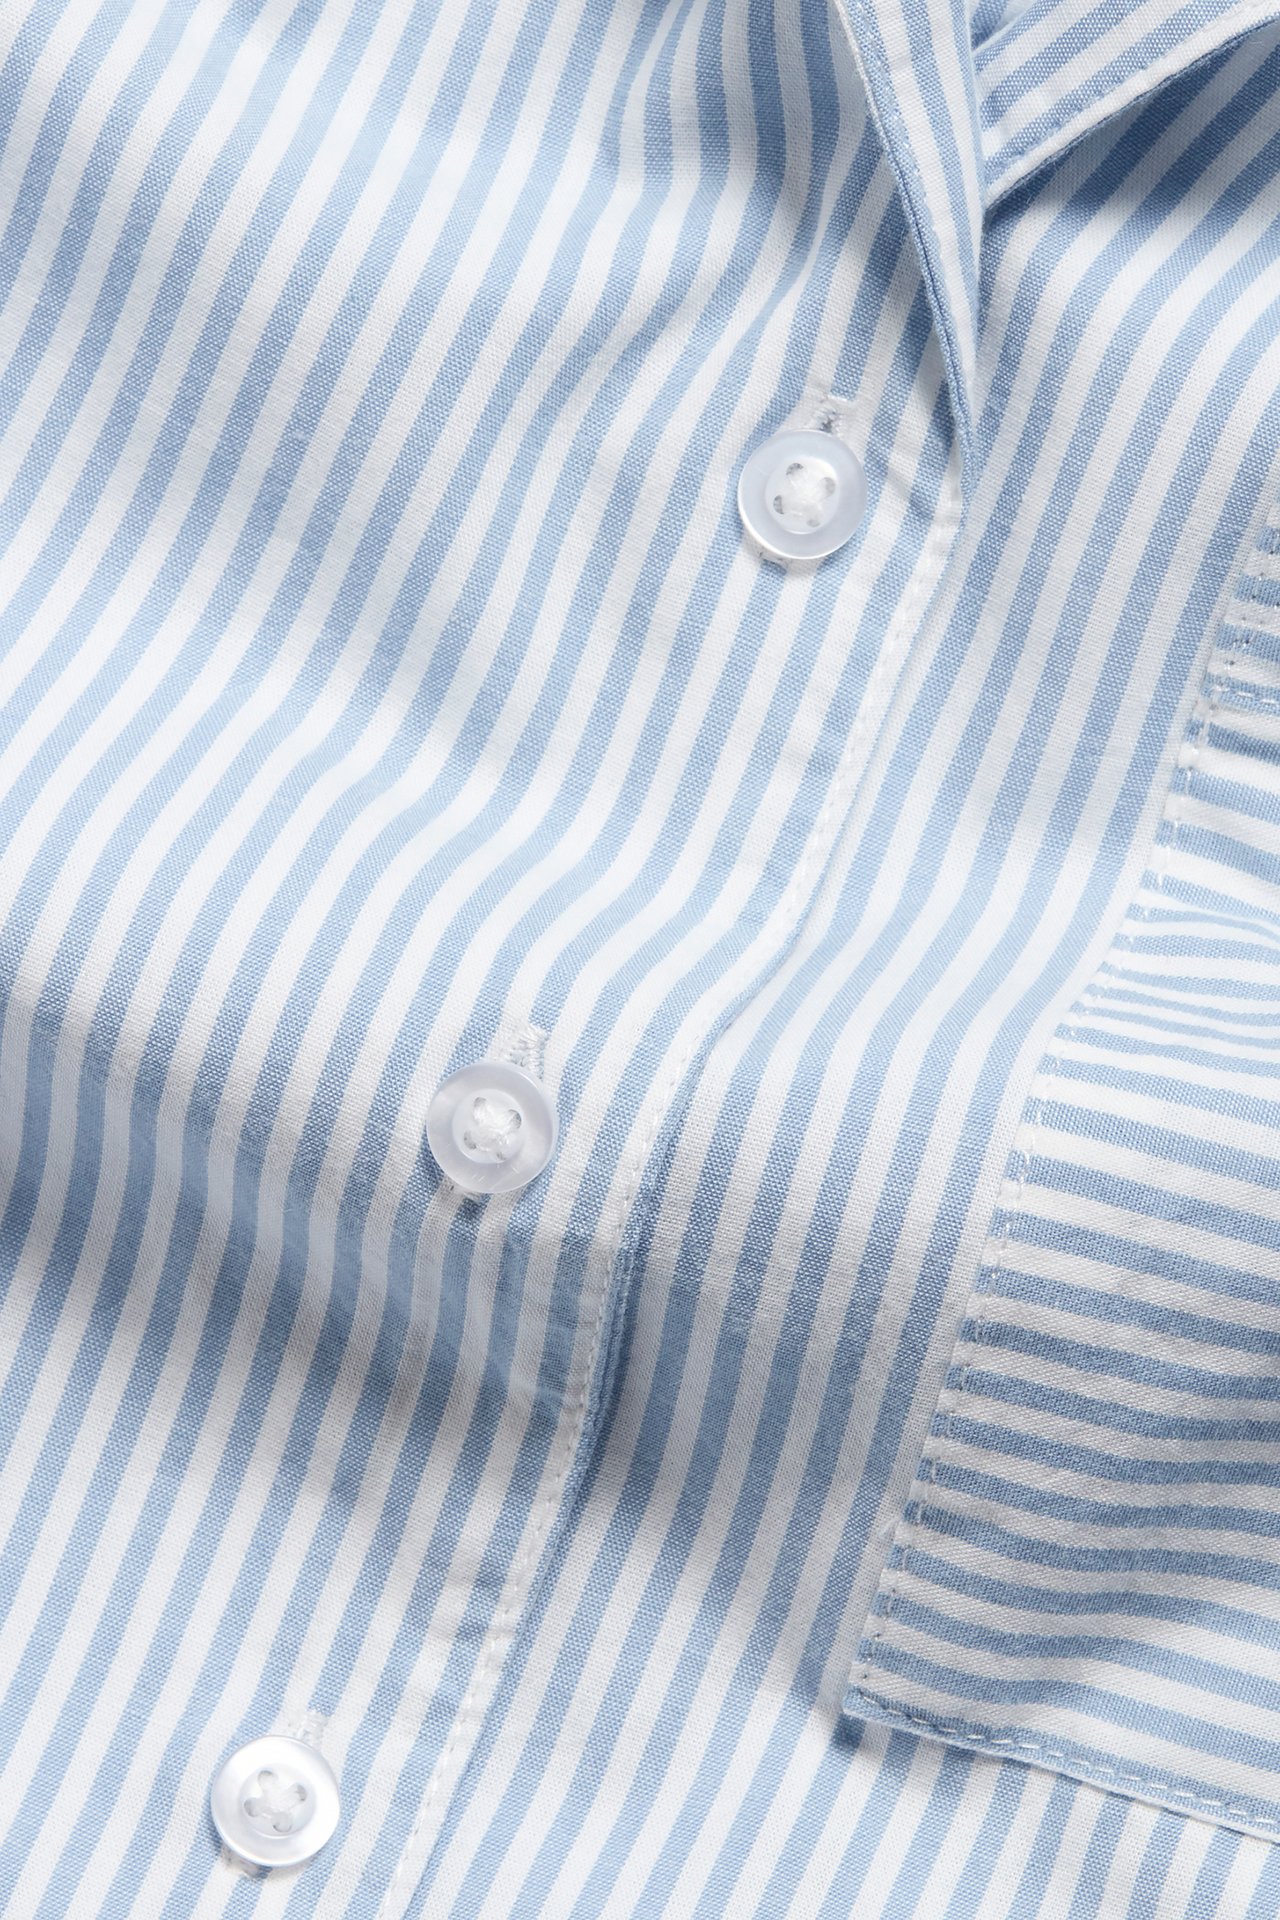 Pyjamasskjorte Blå - null - 5